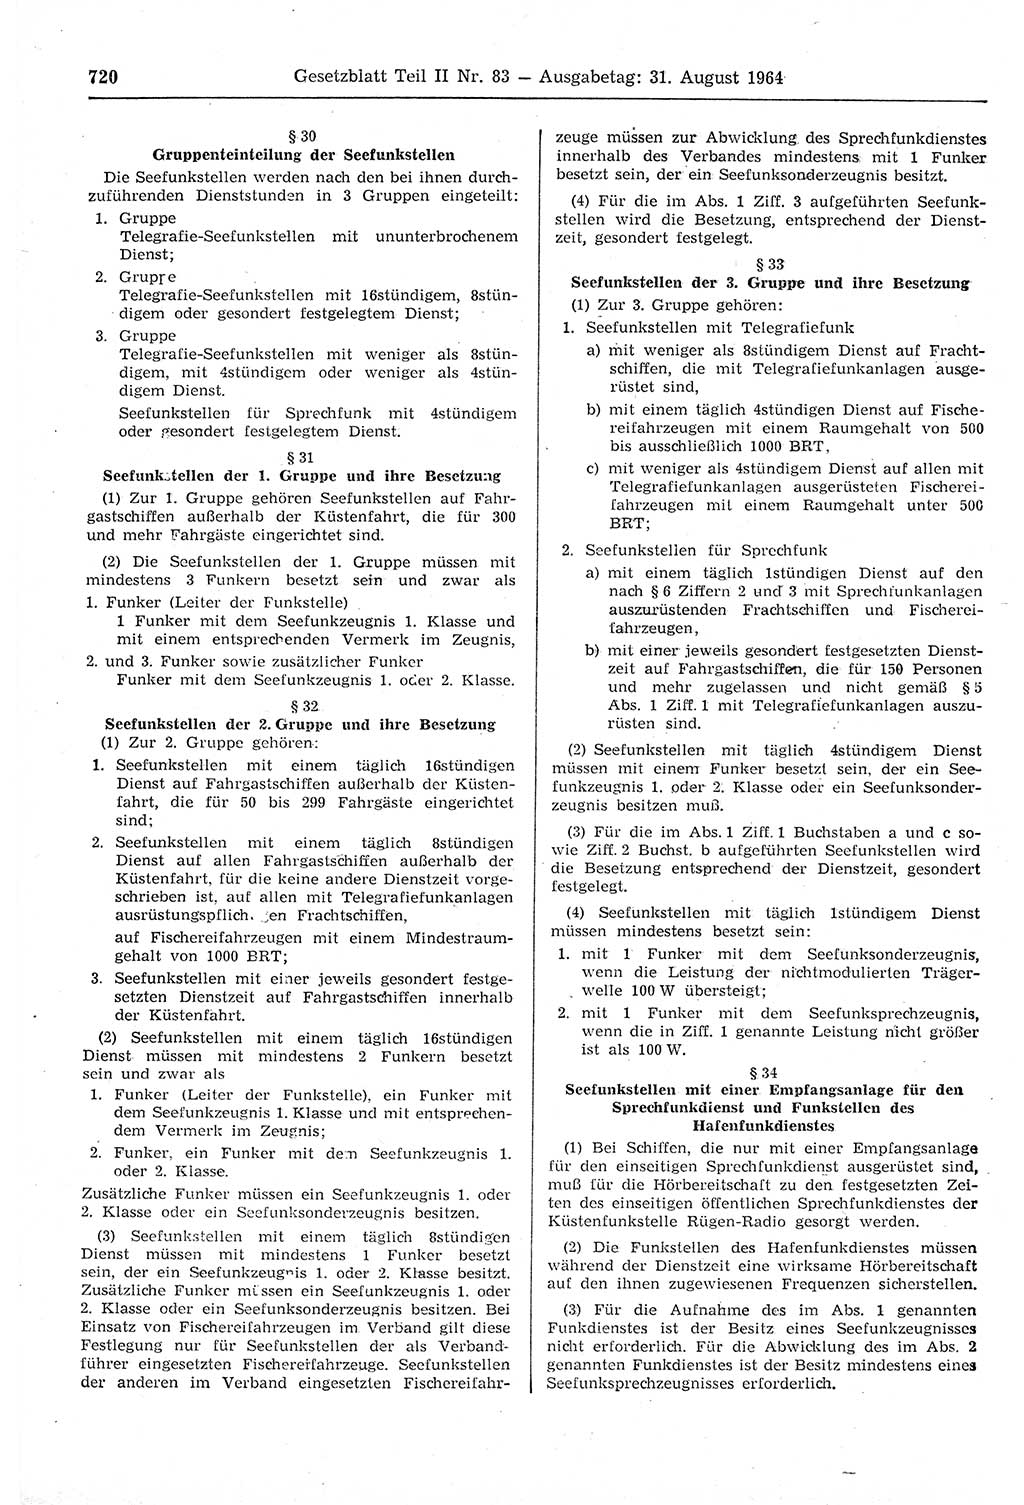 Gesetzblatt (GBl.) der Deutschen Demokratischen Republik (DDR) Teil ⅠⅠ 1964, Seite 720 (GBl. DDR ⅠⅠ 1964, S. 720)